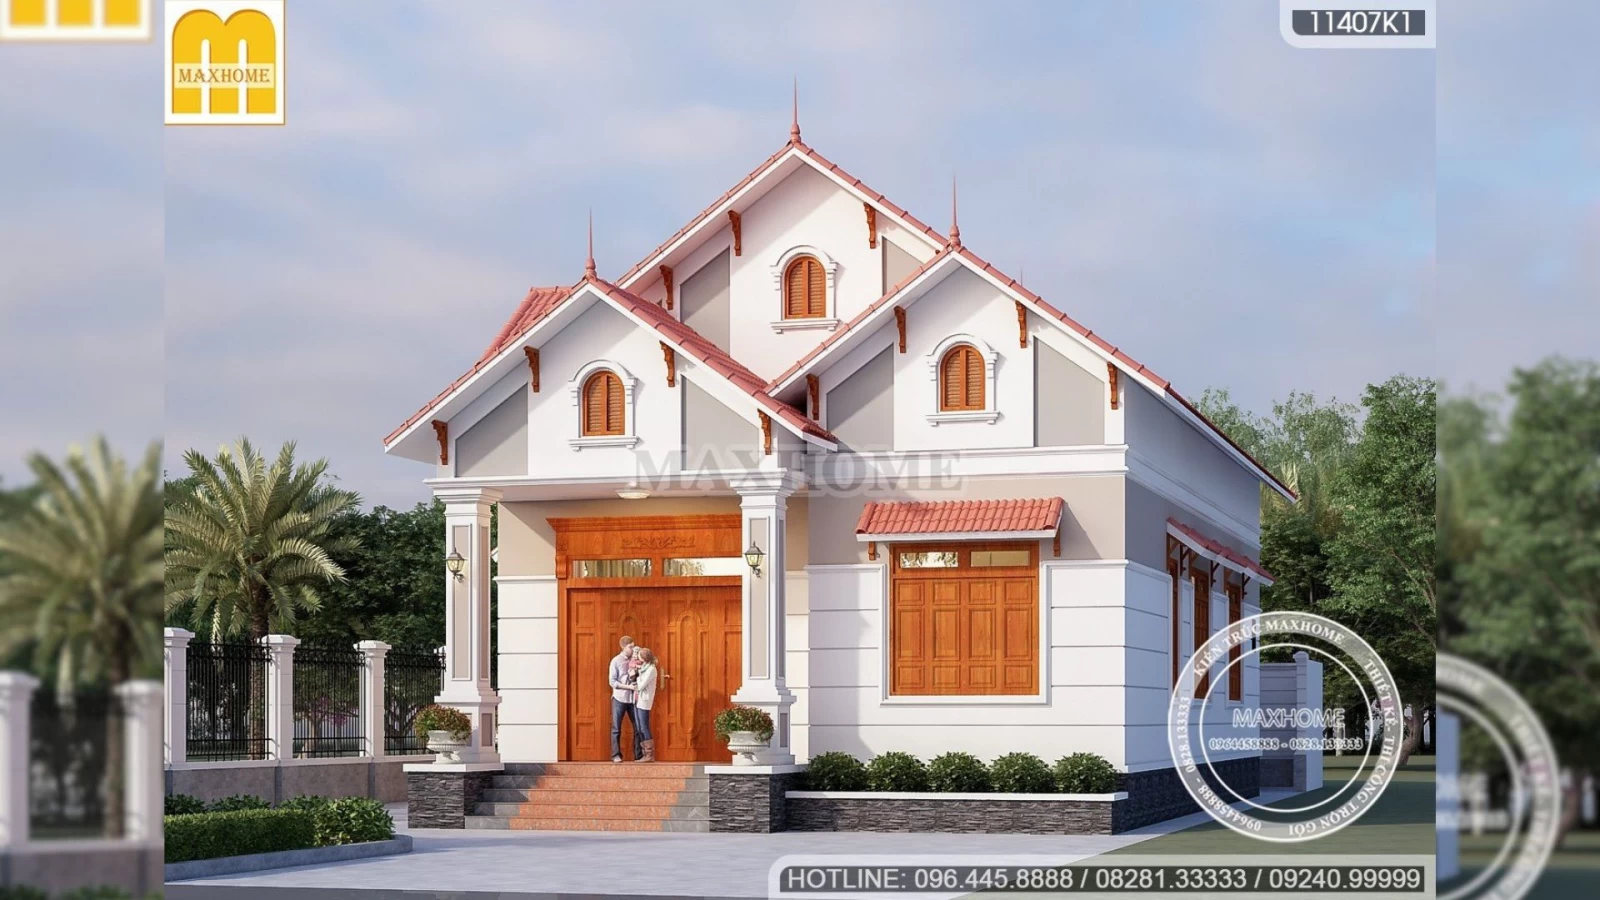 Bán bản vẽ nhà mái Thái tân cổ điển đẹp cuốn hút người xem | MH02333